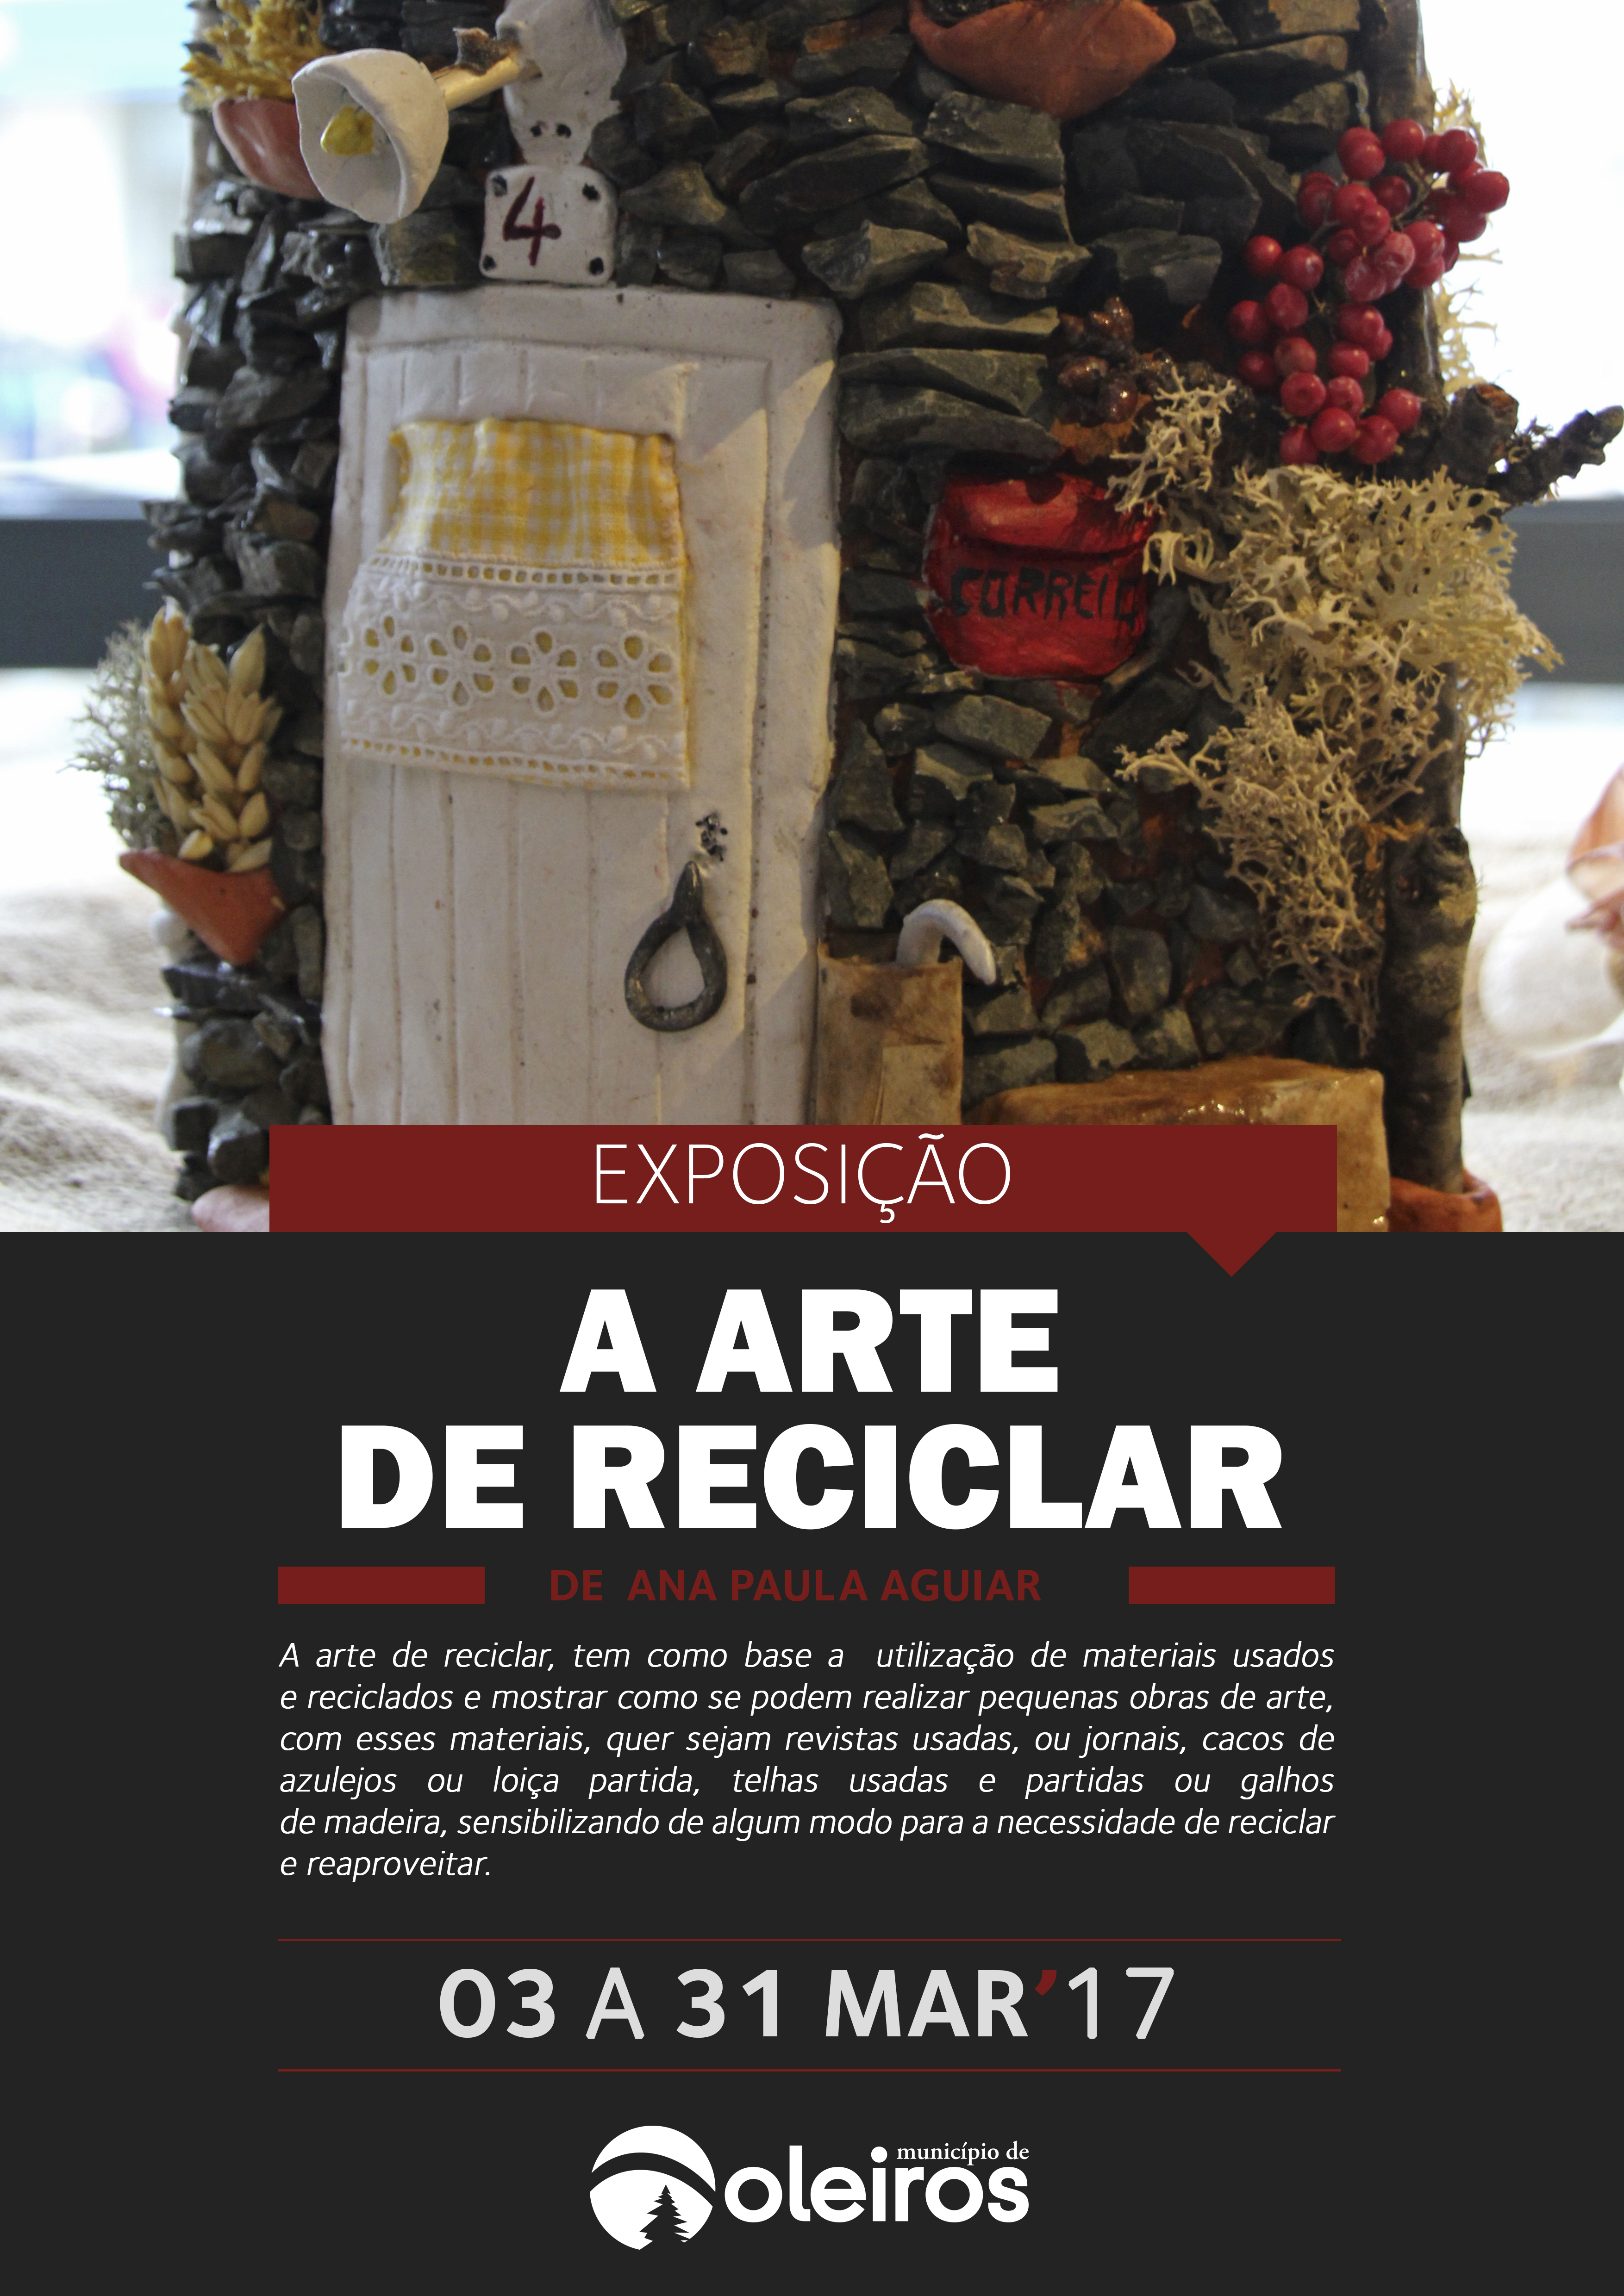 Oleiros expõe "A Arte de Reciclar" durante o mês de março